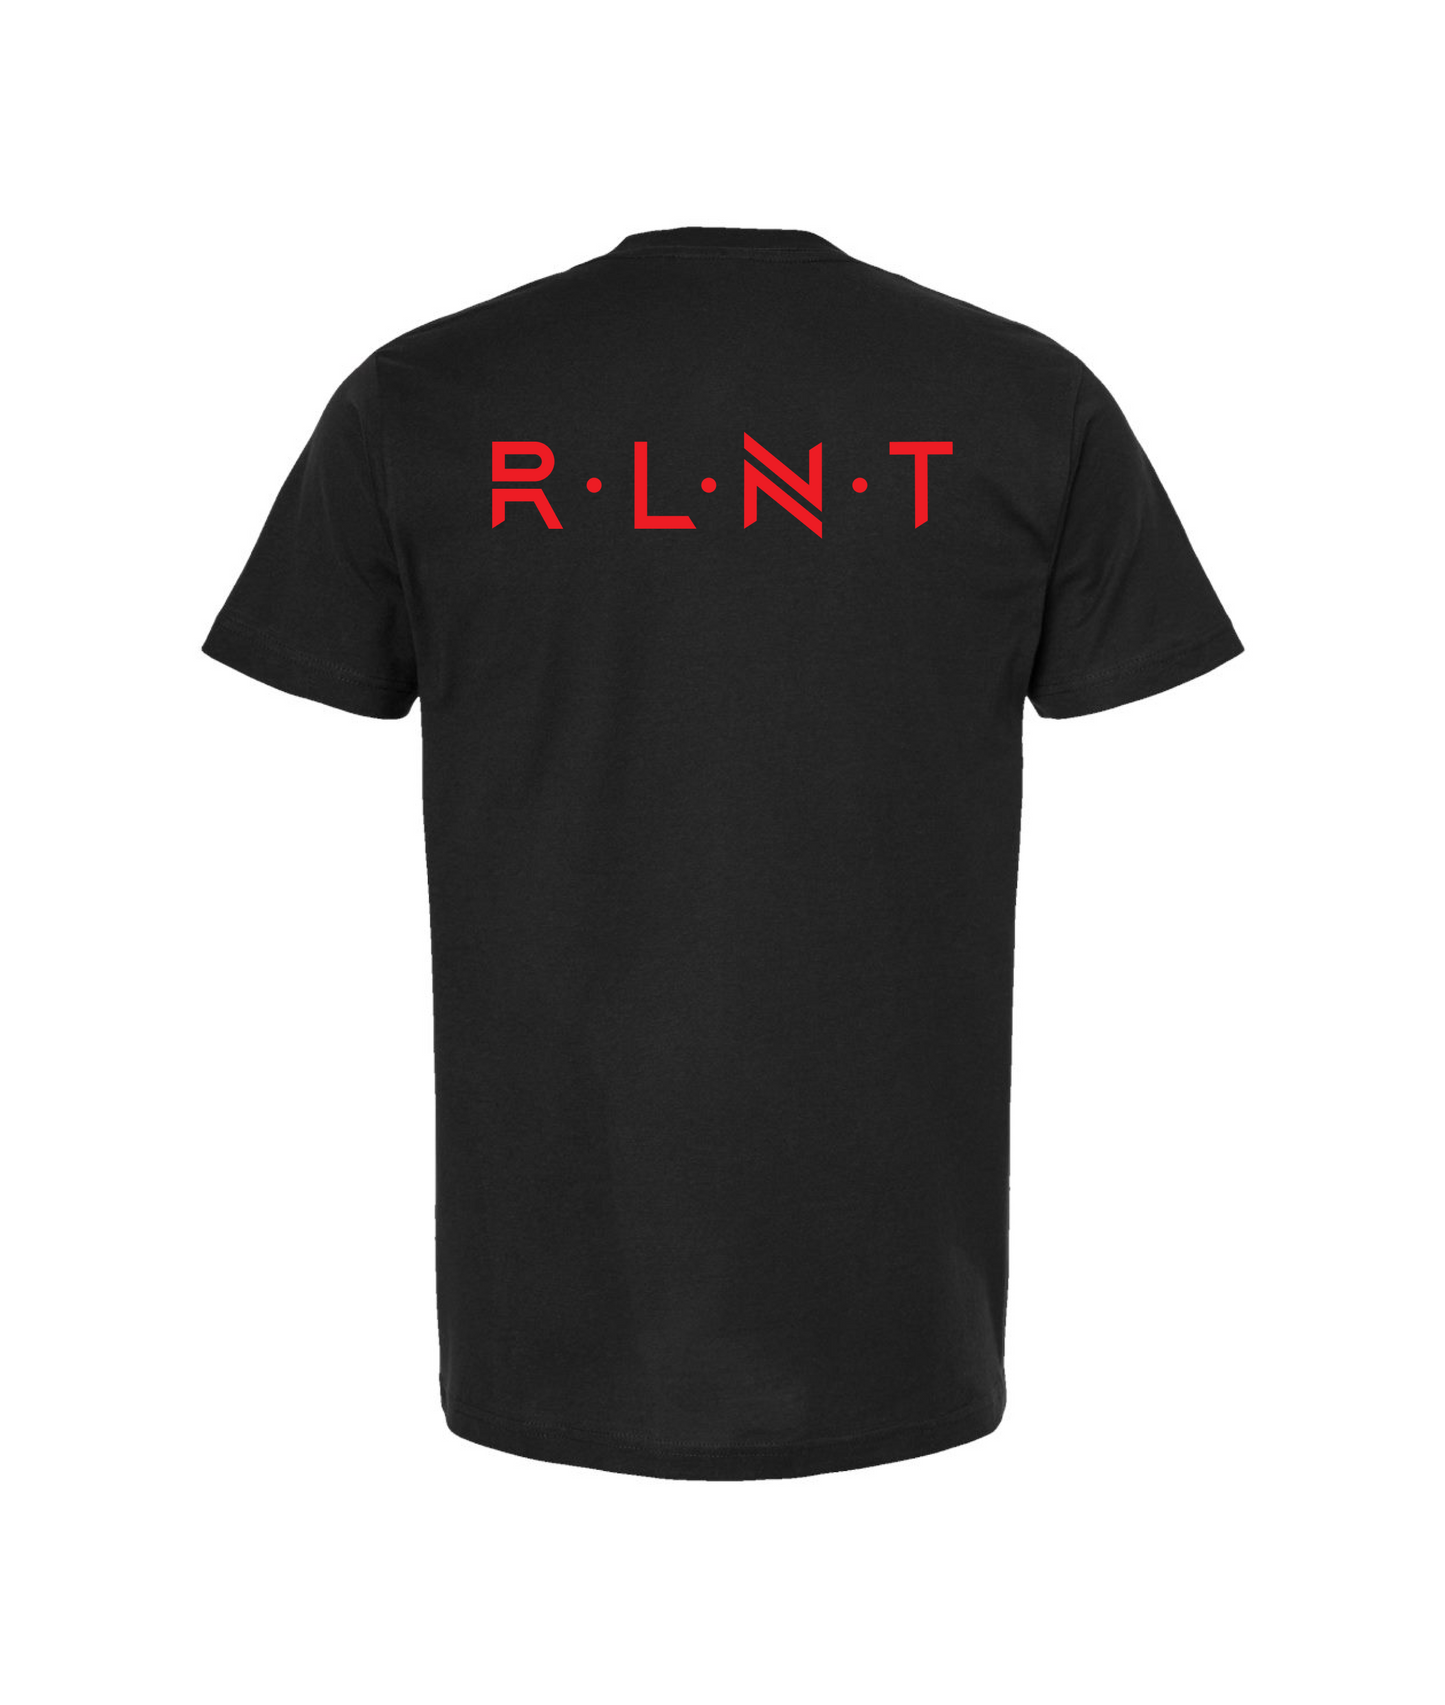 Relent - SOMETIMES I FEEL LOW - Black T-Shirt